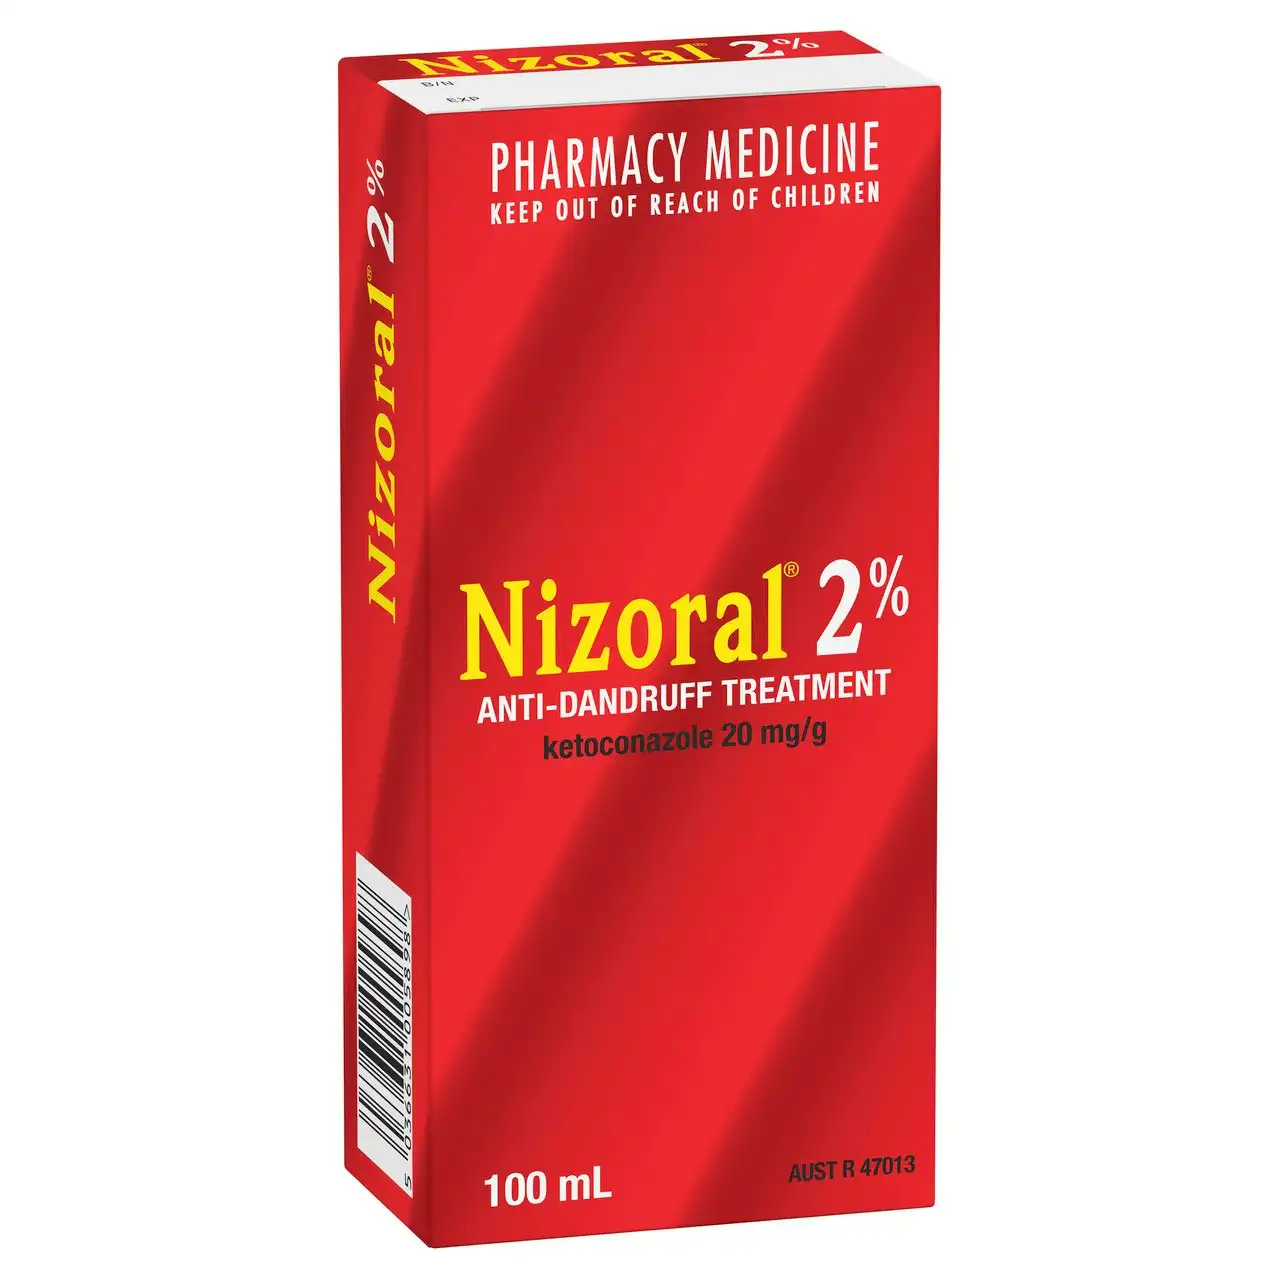 NIZORAL 2% Anti-Dandruff Treatment 100mL